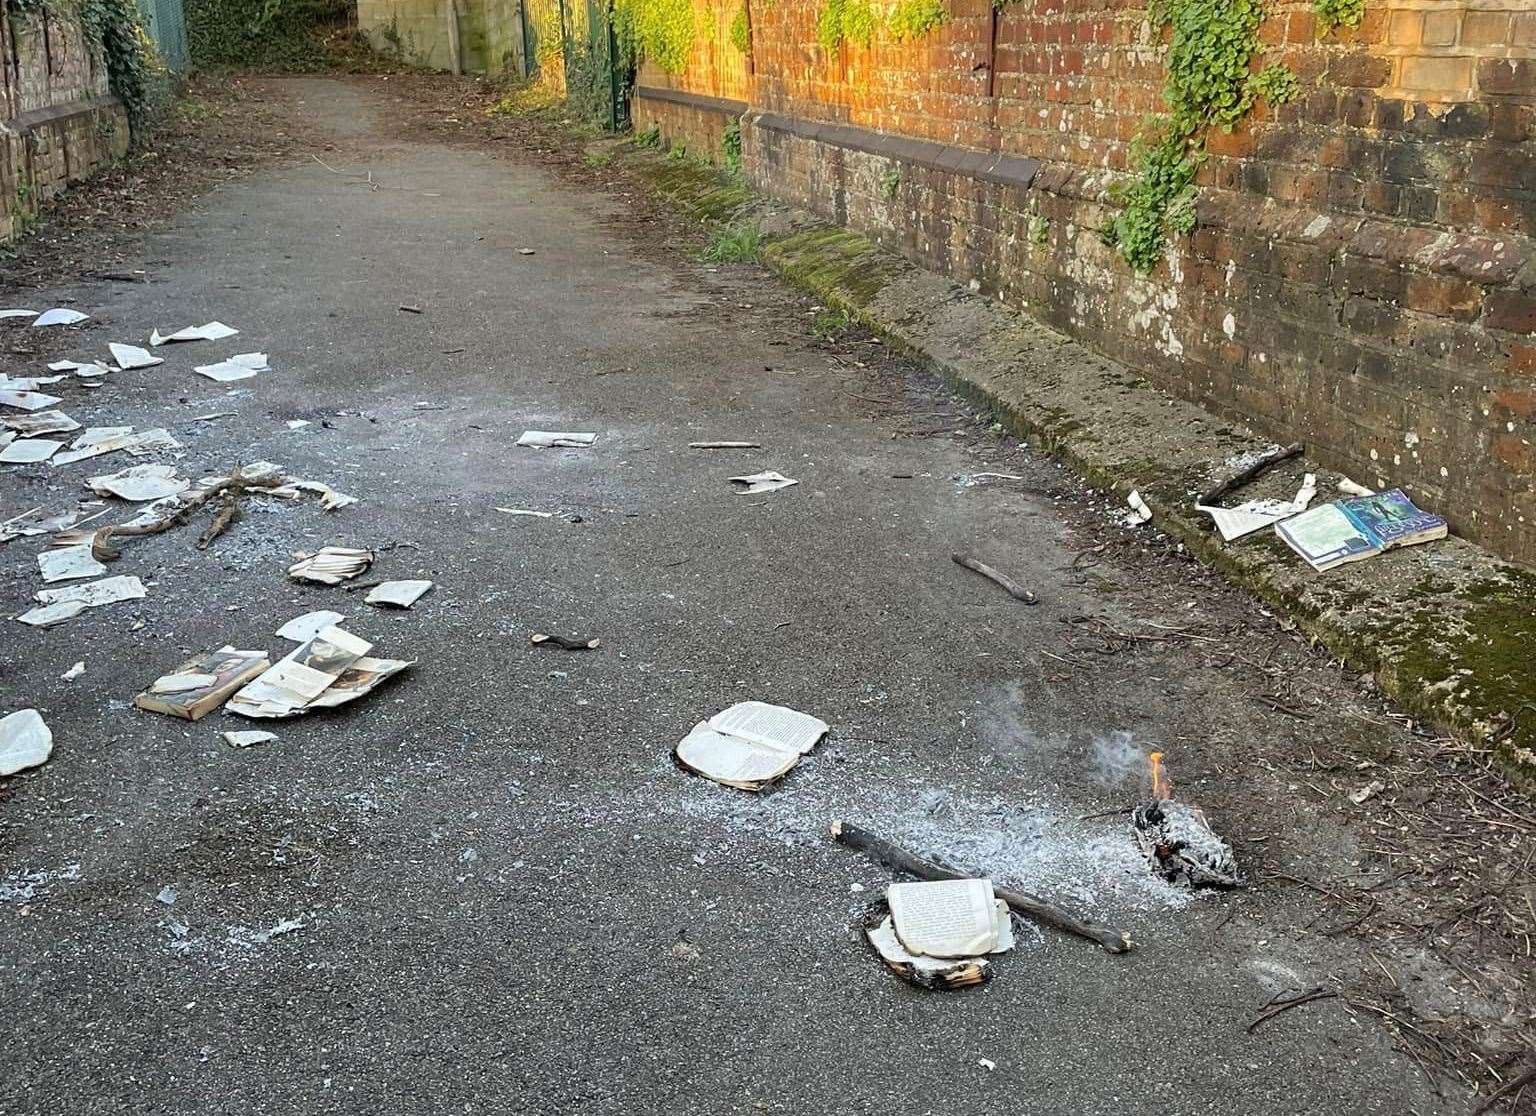 Burnt books scattered across the railway bridge in River, near Dover